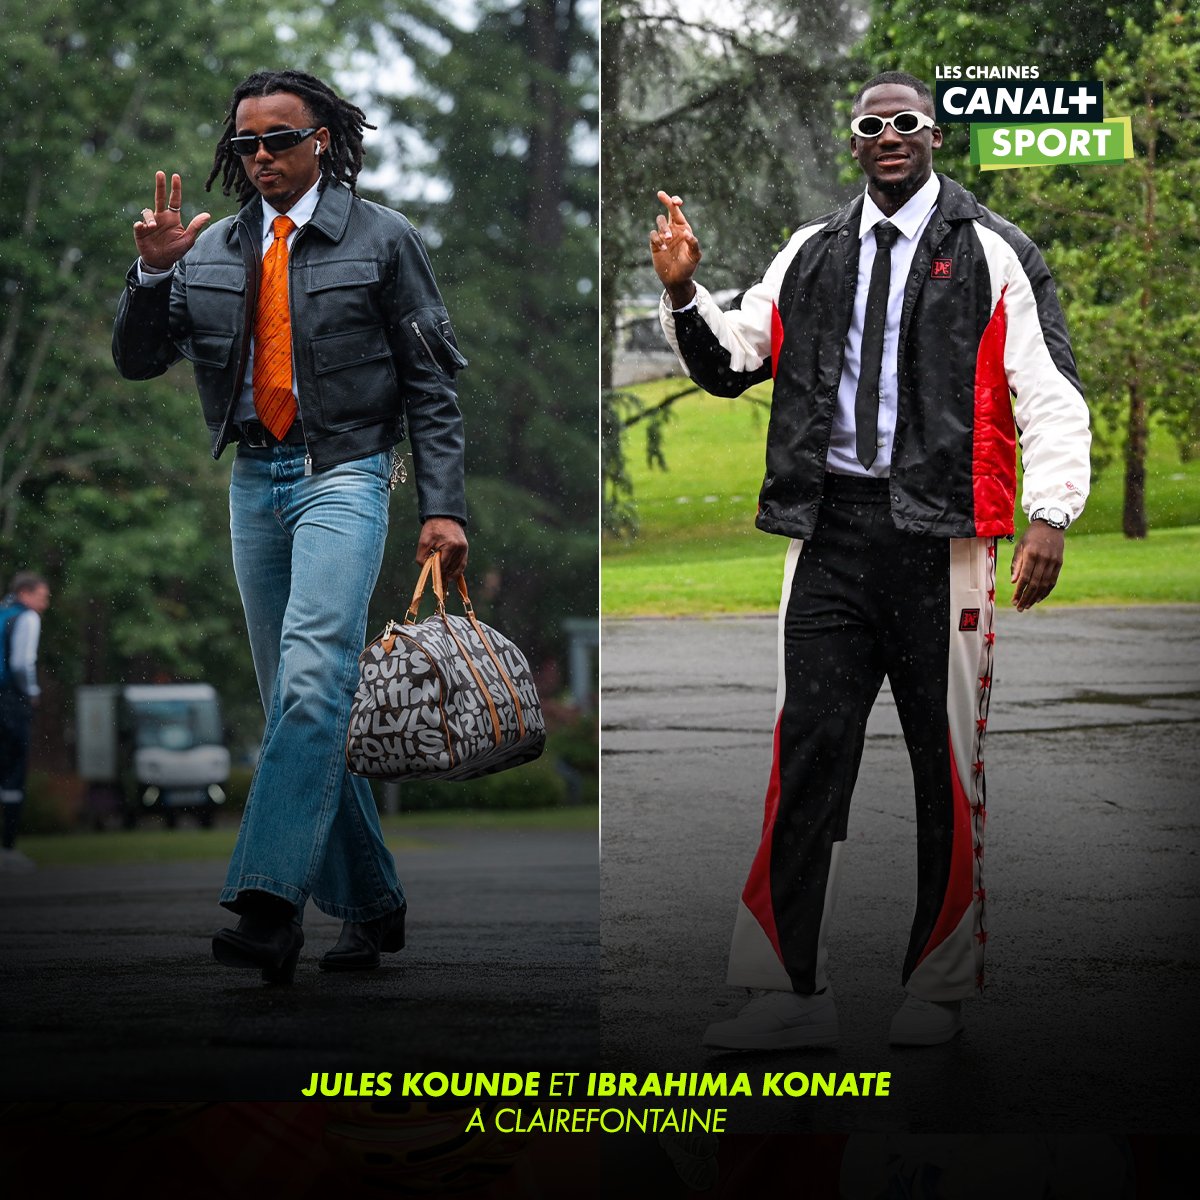 Jules Koundé et Ibrahima Konaté, la paire de défenseurs la plus stylée du monde ? 😜